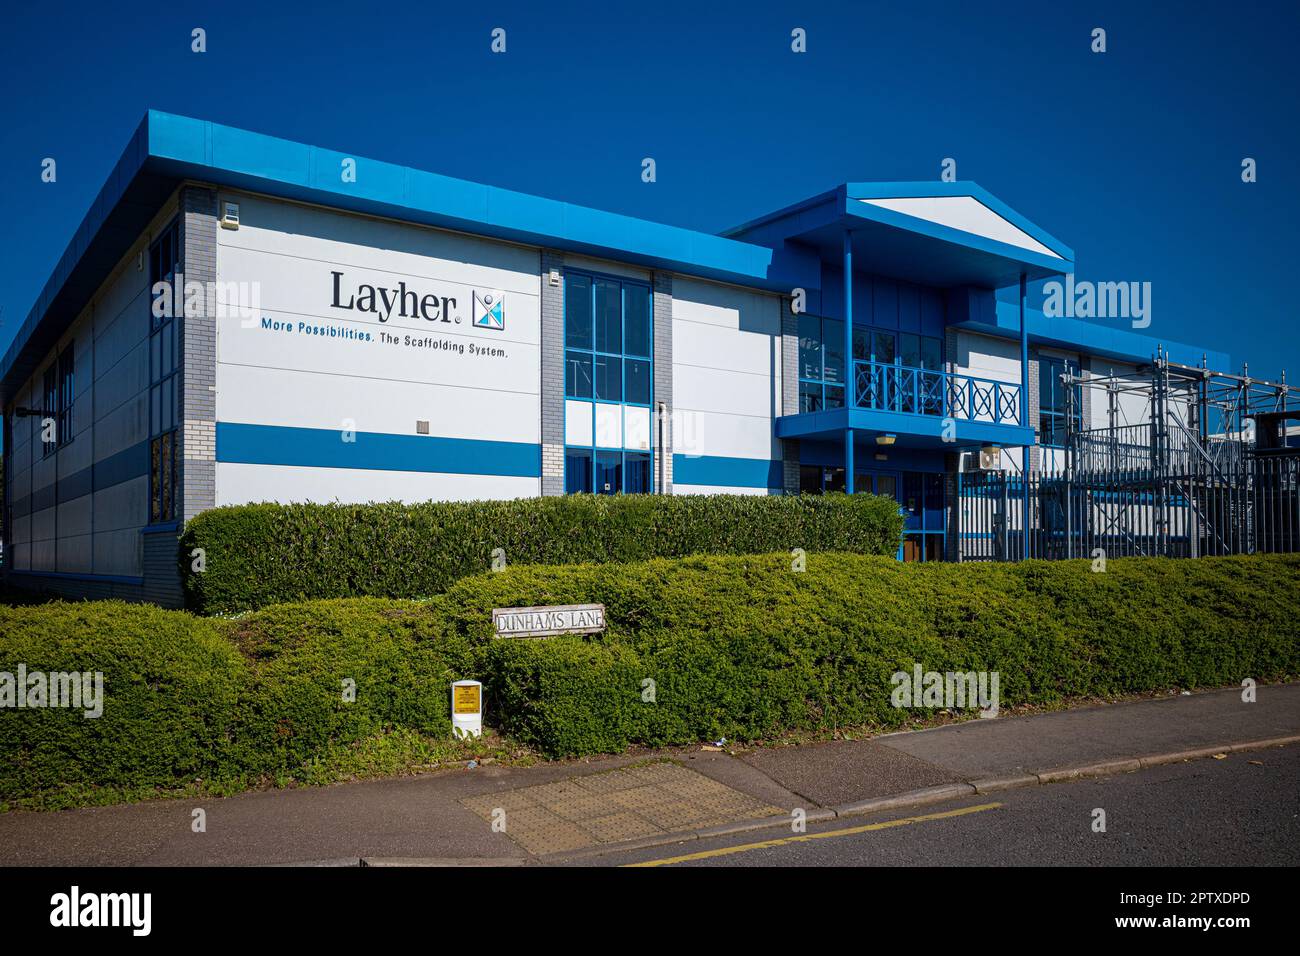 Layher Ltd Reino Unido en Works Road Letchworth Garden City. Layher es un fabricante alemán de productos de andamios. Layher Holding GmbH & Co. KG. Foto de stock